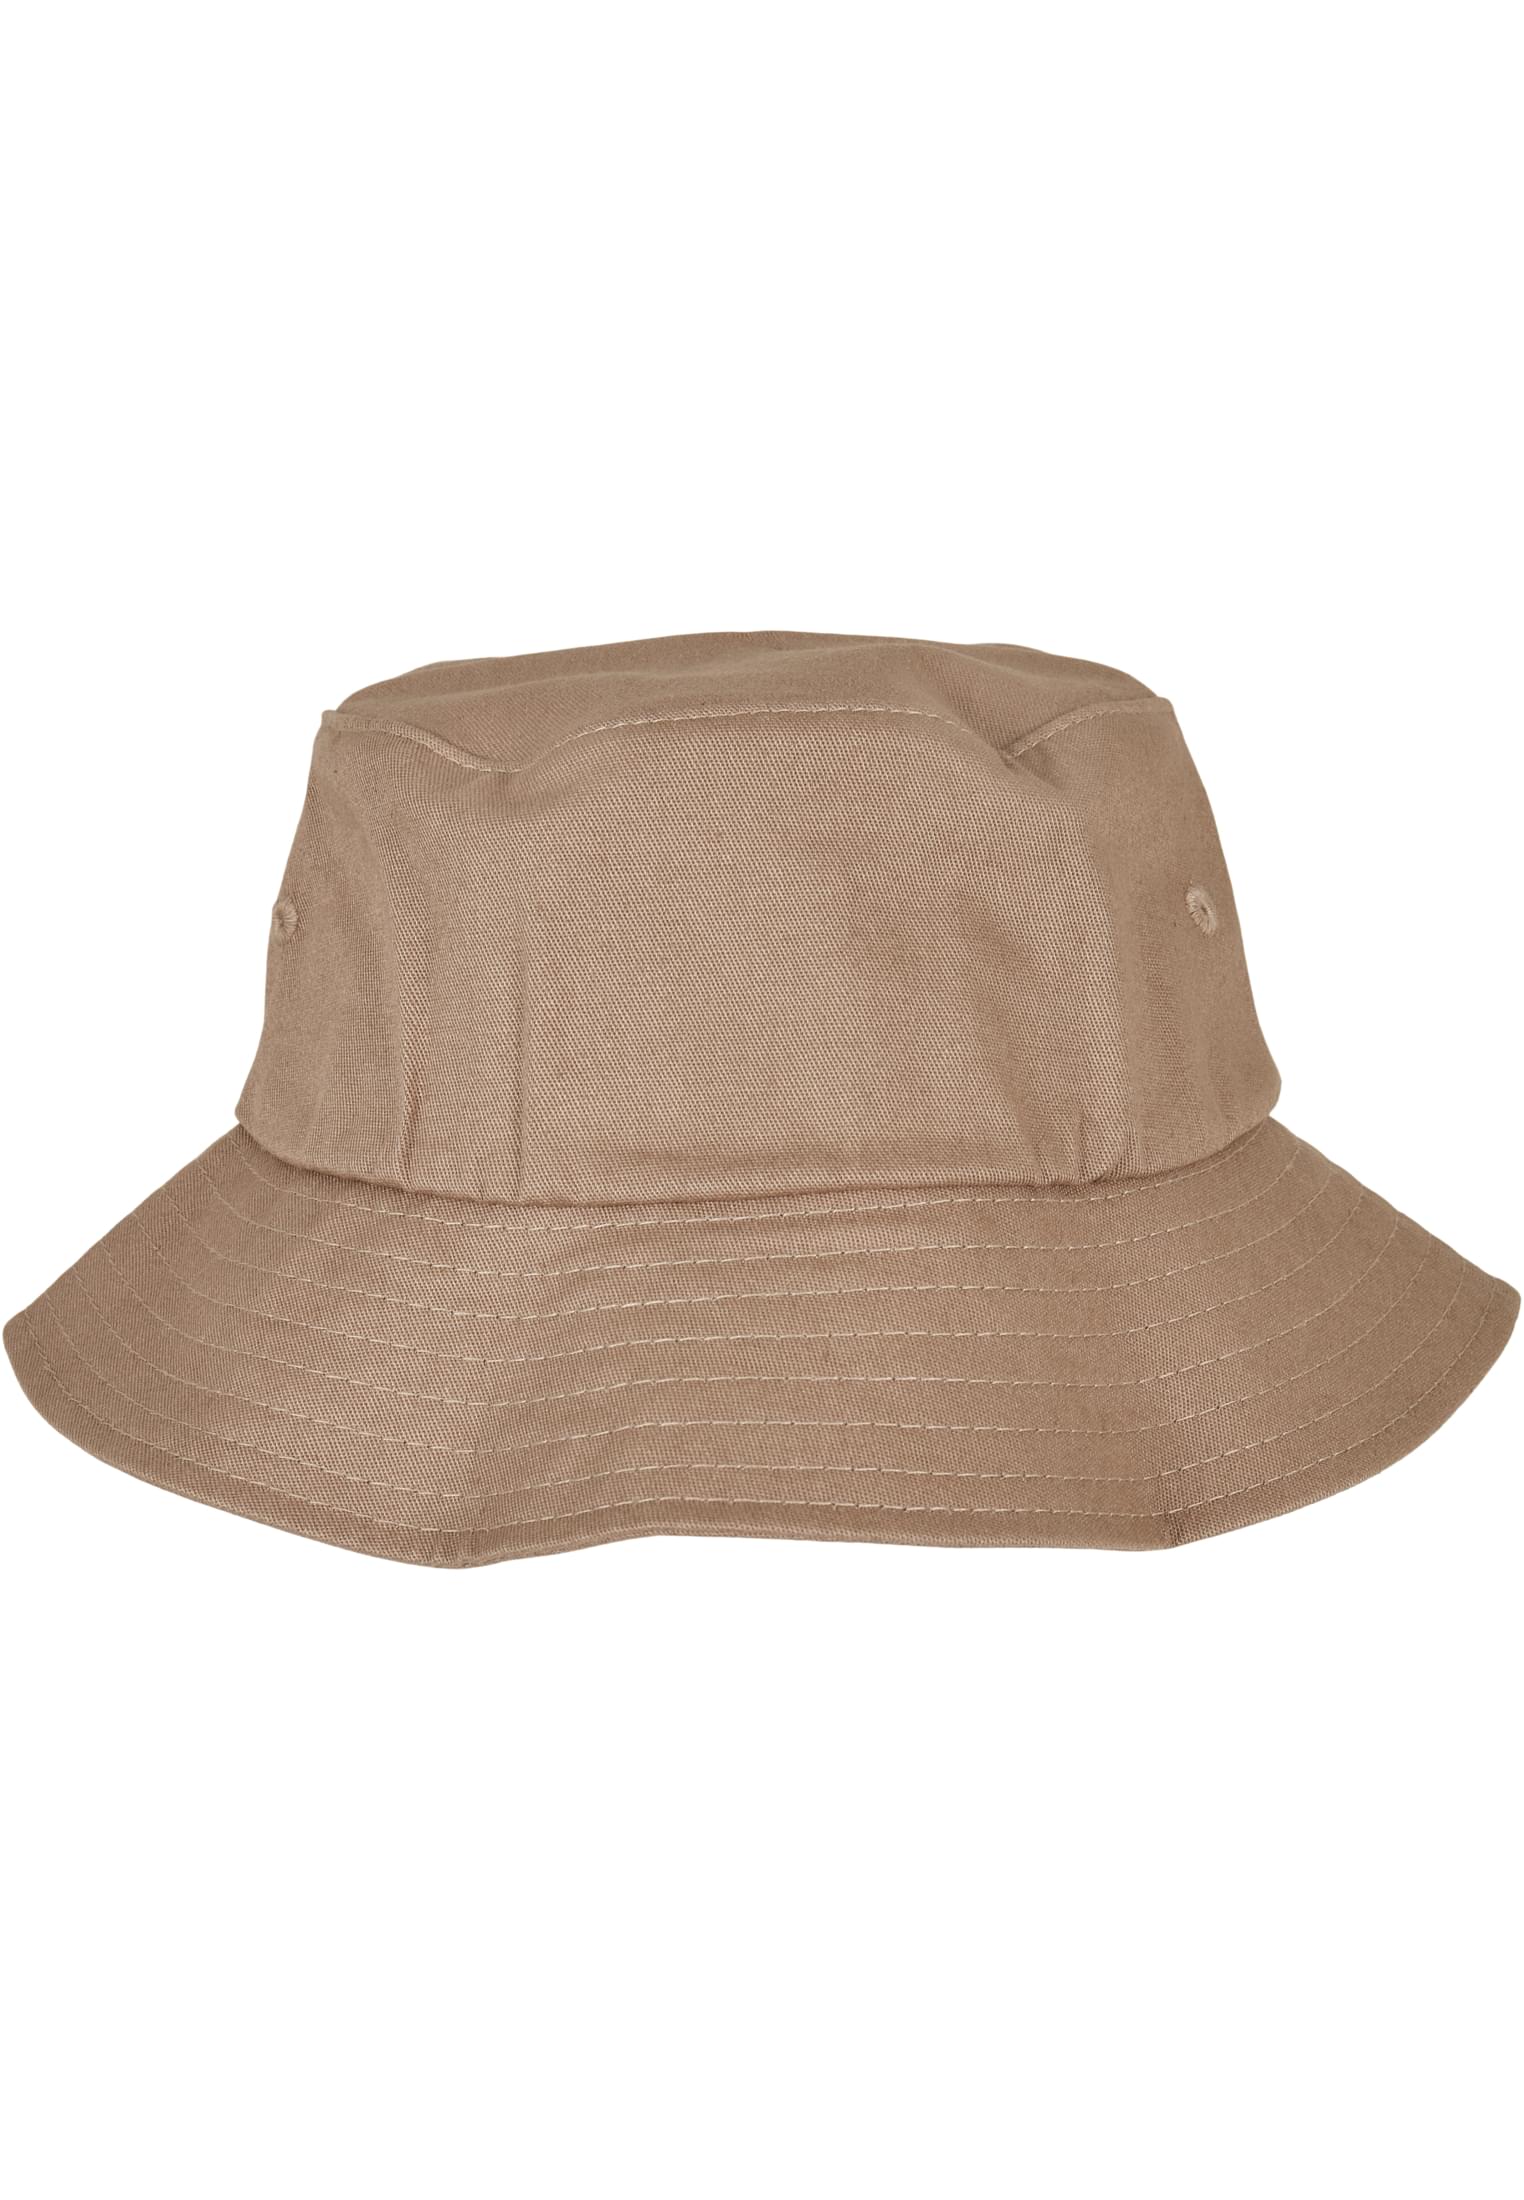 Kids-5003KH Hat Flexfit Bucket Twill Cotton